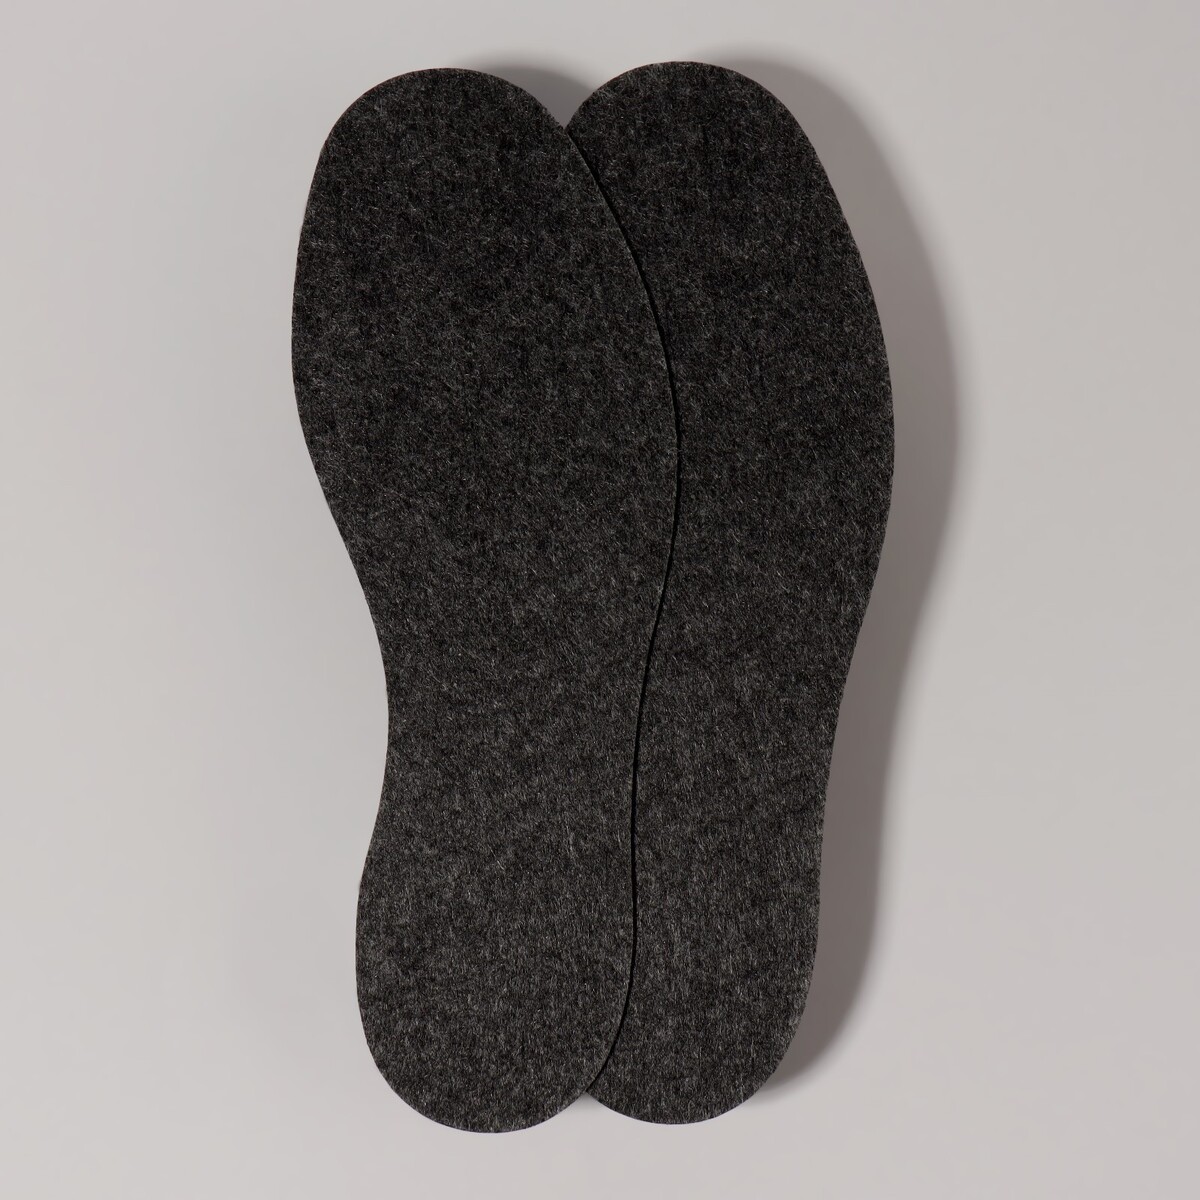 Стельки обуви No brand, размер 39, цвет черный